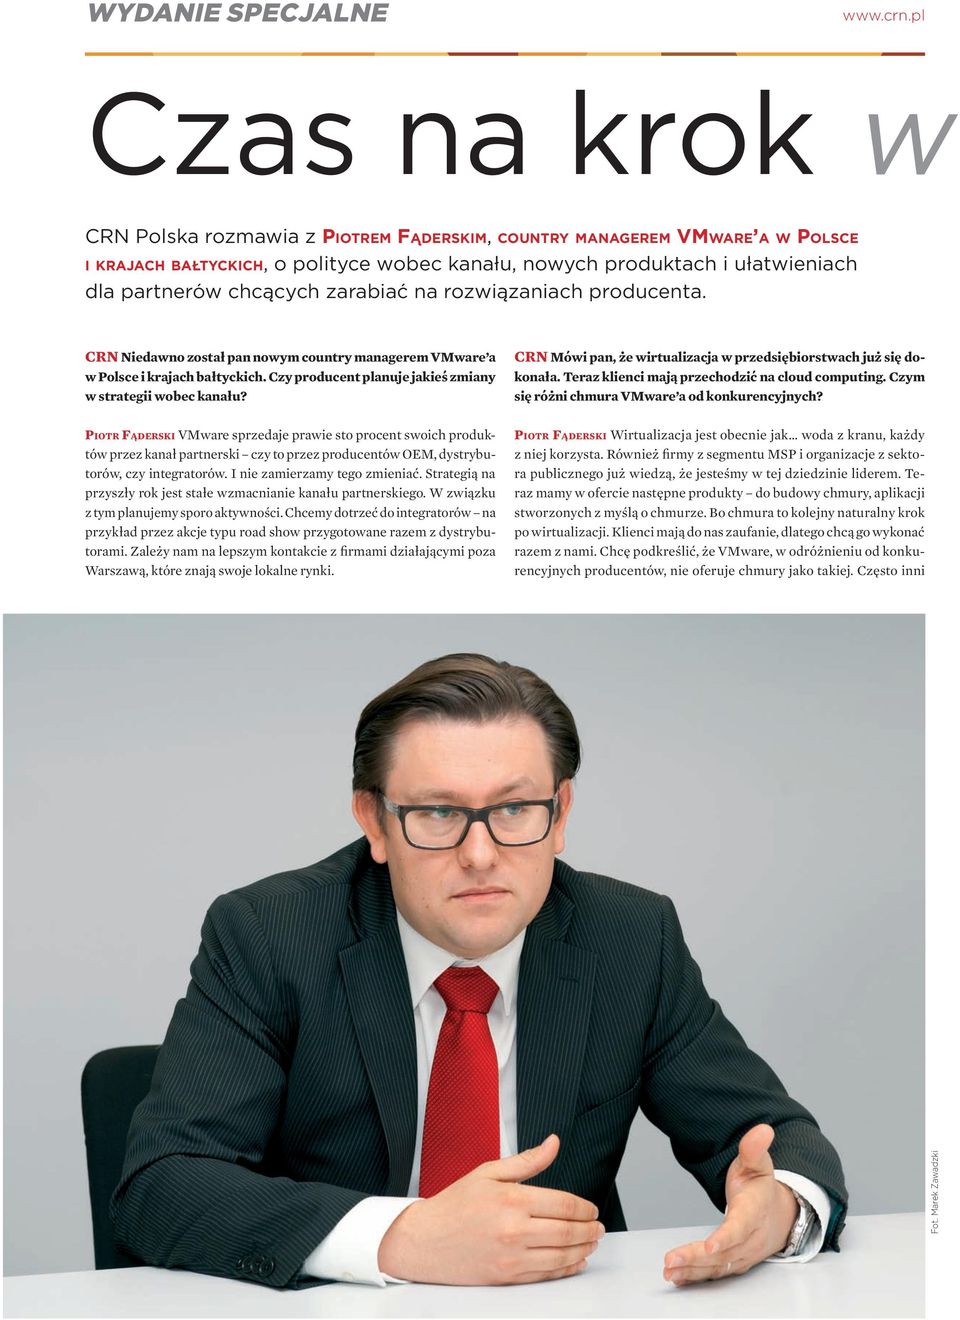 zarabiać na rozwiązaniach producenta. CRN Niedawno został pan nowym country managerem VMware a w Polsce i krajach bałtyckich. Czy producent planuje jakieś zmiany w strategii wobec kanału?